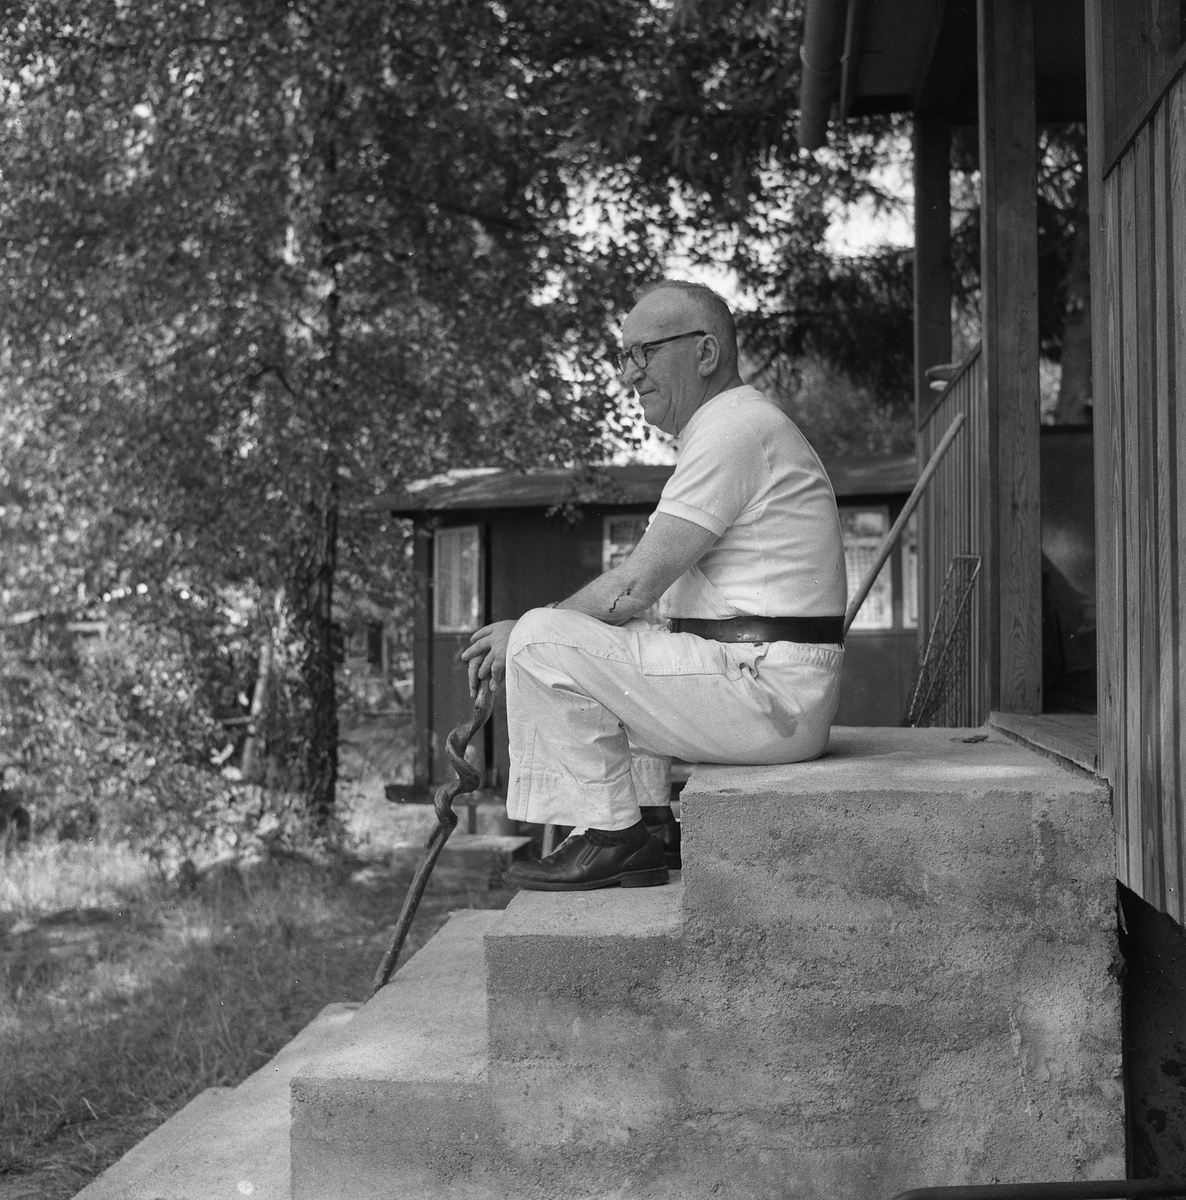 En man på trappan.
8 juli 1959.